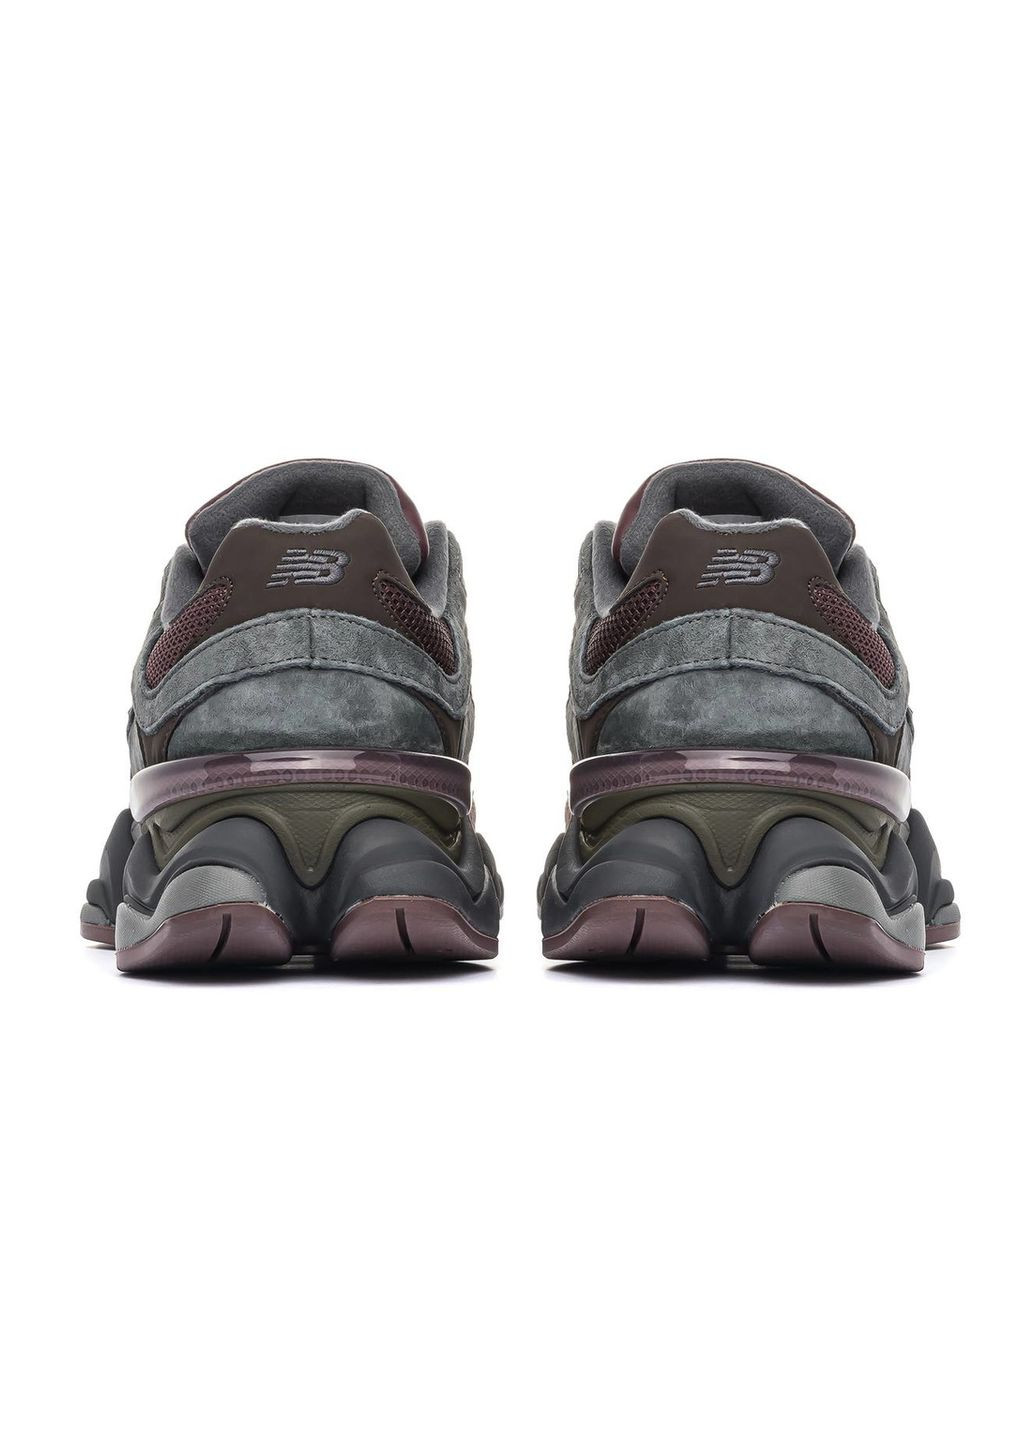 Цветные демисезонные кроссовки мужские grey brown, вьетнам New Balance 9060